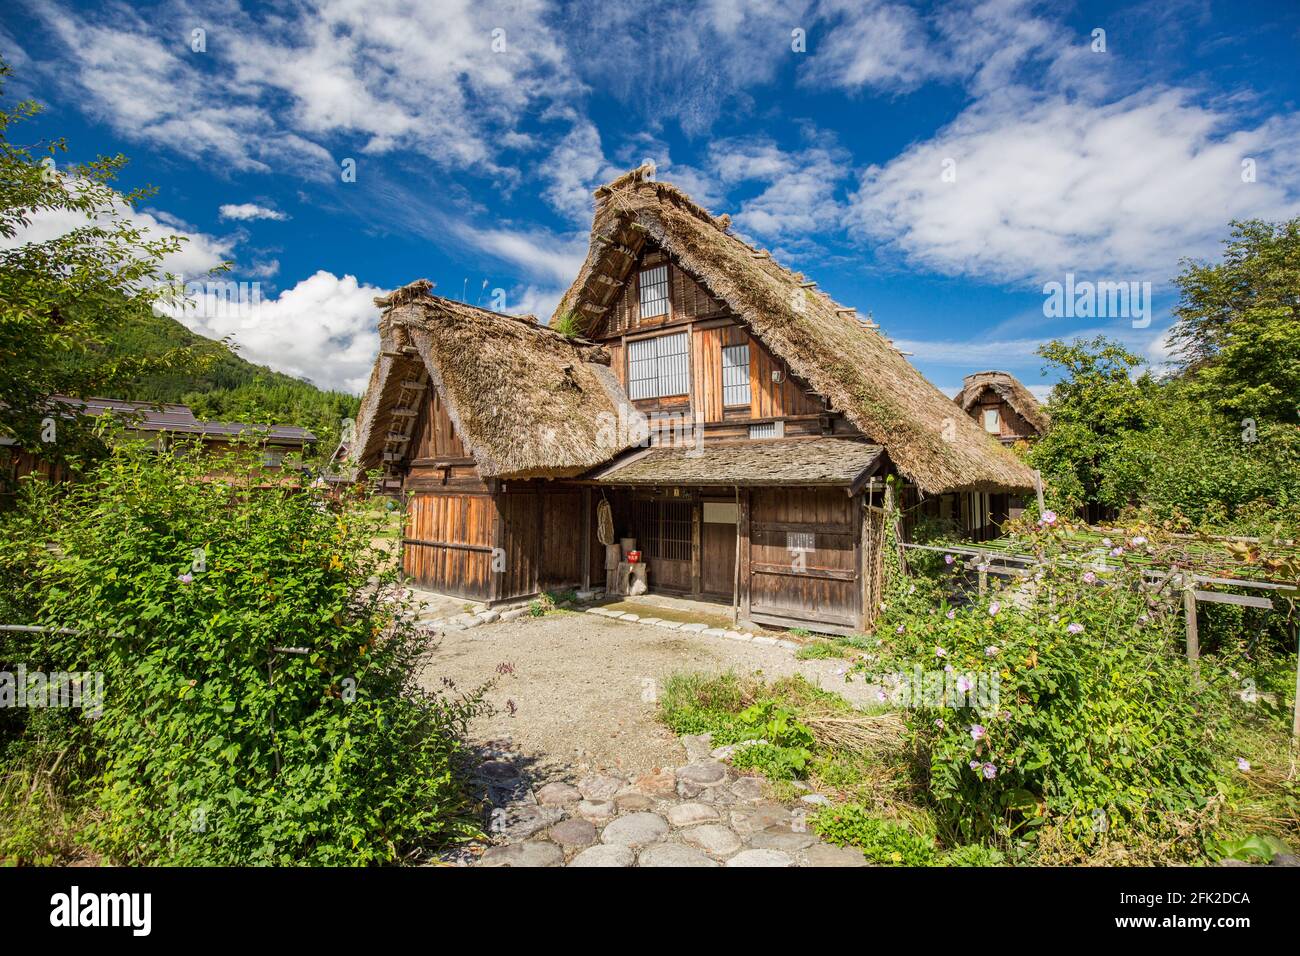 Petite maison japonaise traditionnelle. Bâtiment avec toit de chaume. Ogimachi Shirakawa-Go, site classé au patrimoine mondial de l'UNESCO. Shirakawa, Gifu, Japon Banque D'Images